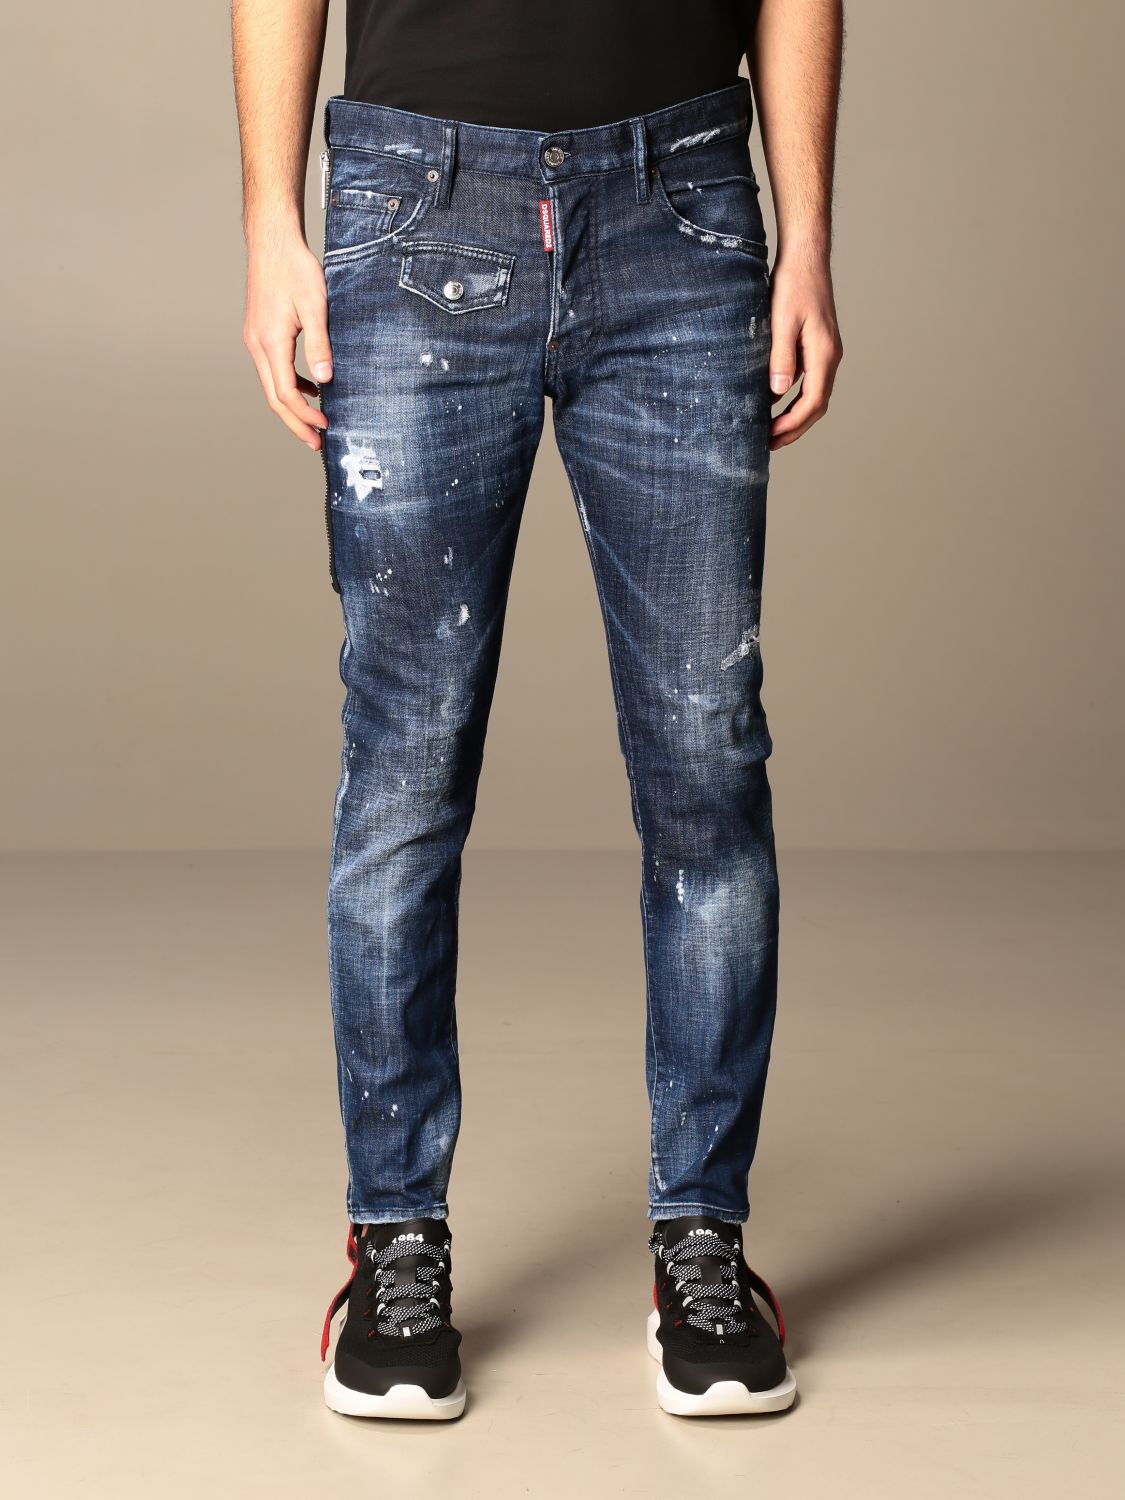 DSQUARED2: Jeans para hombre, Denim | Jeans Dsquared2 S74LB0837 S30342 línea en GIGLIO.COM